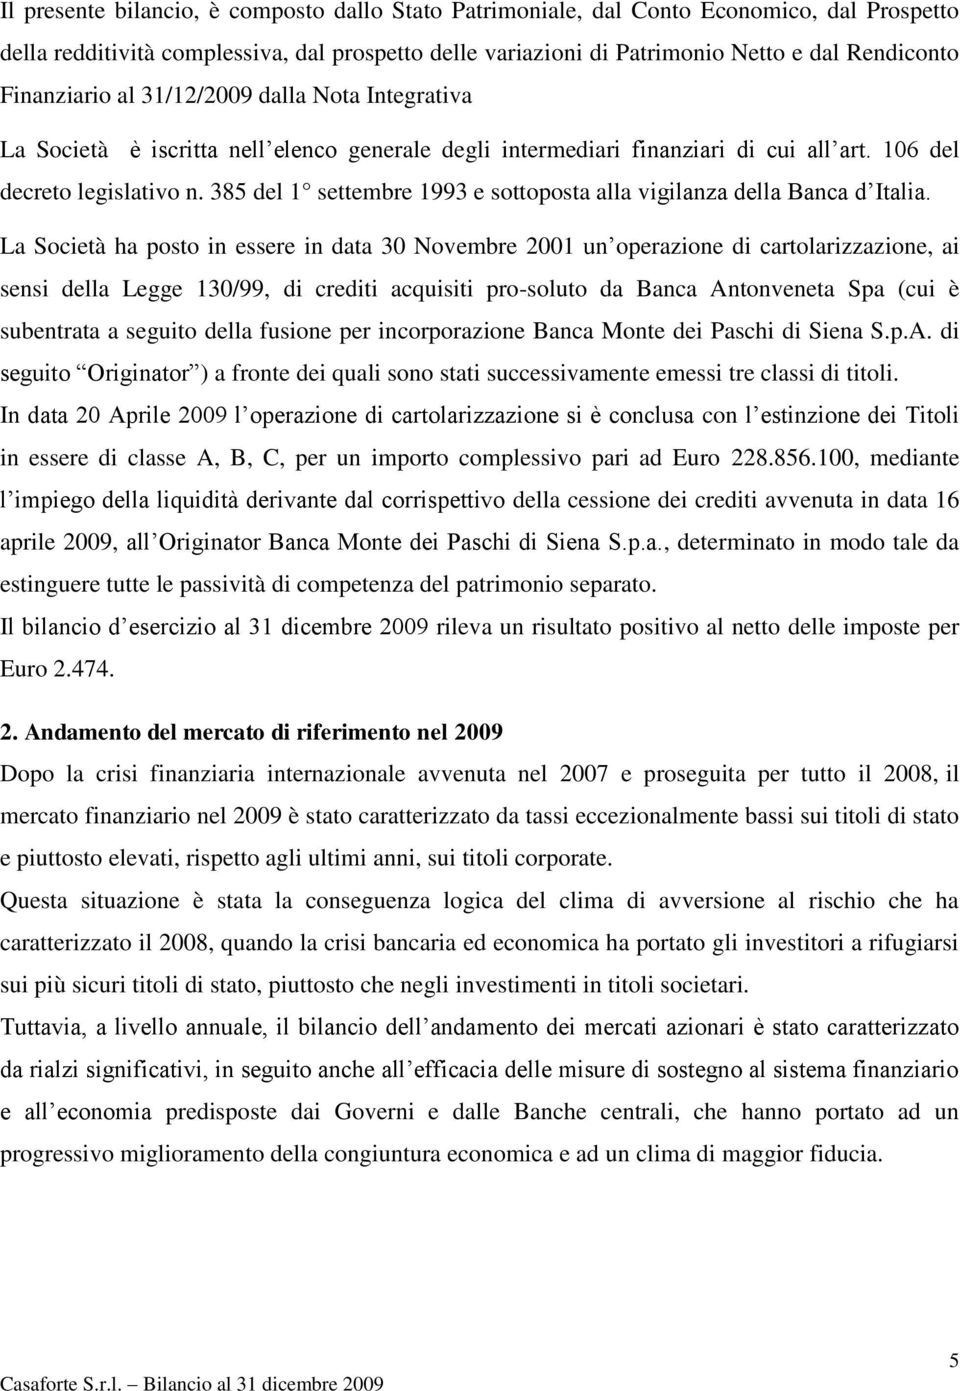 385 del 1 settembre 1993 e sottoposta alla vigilanza della Banca d Italia.